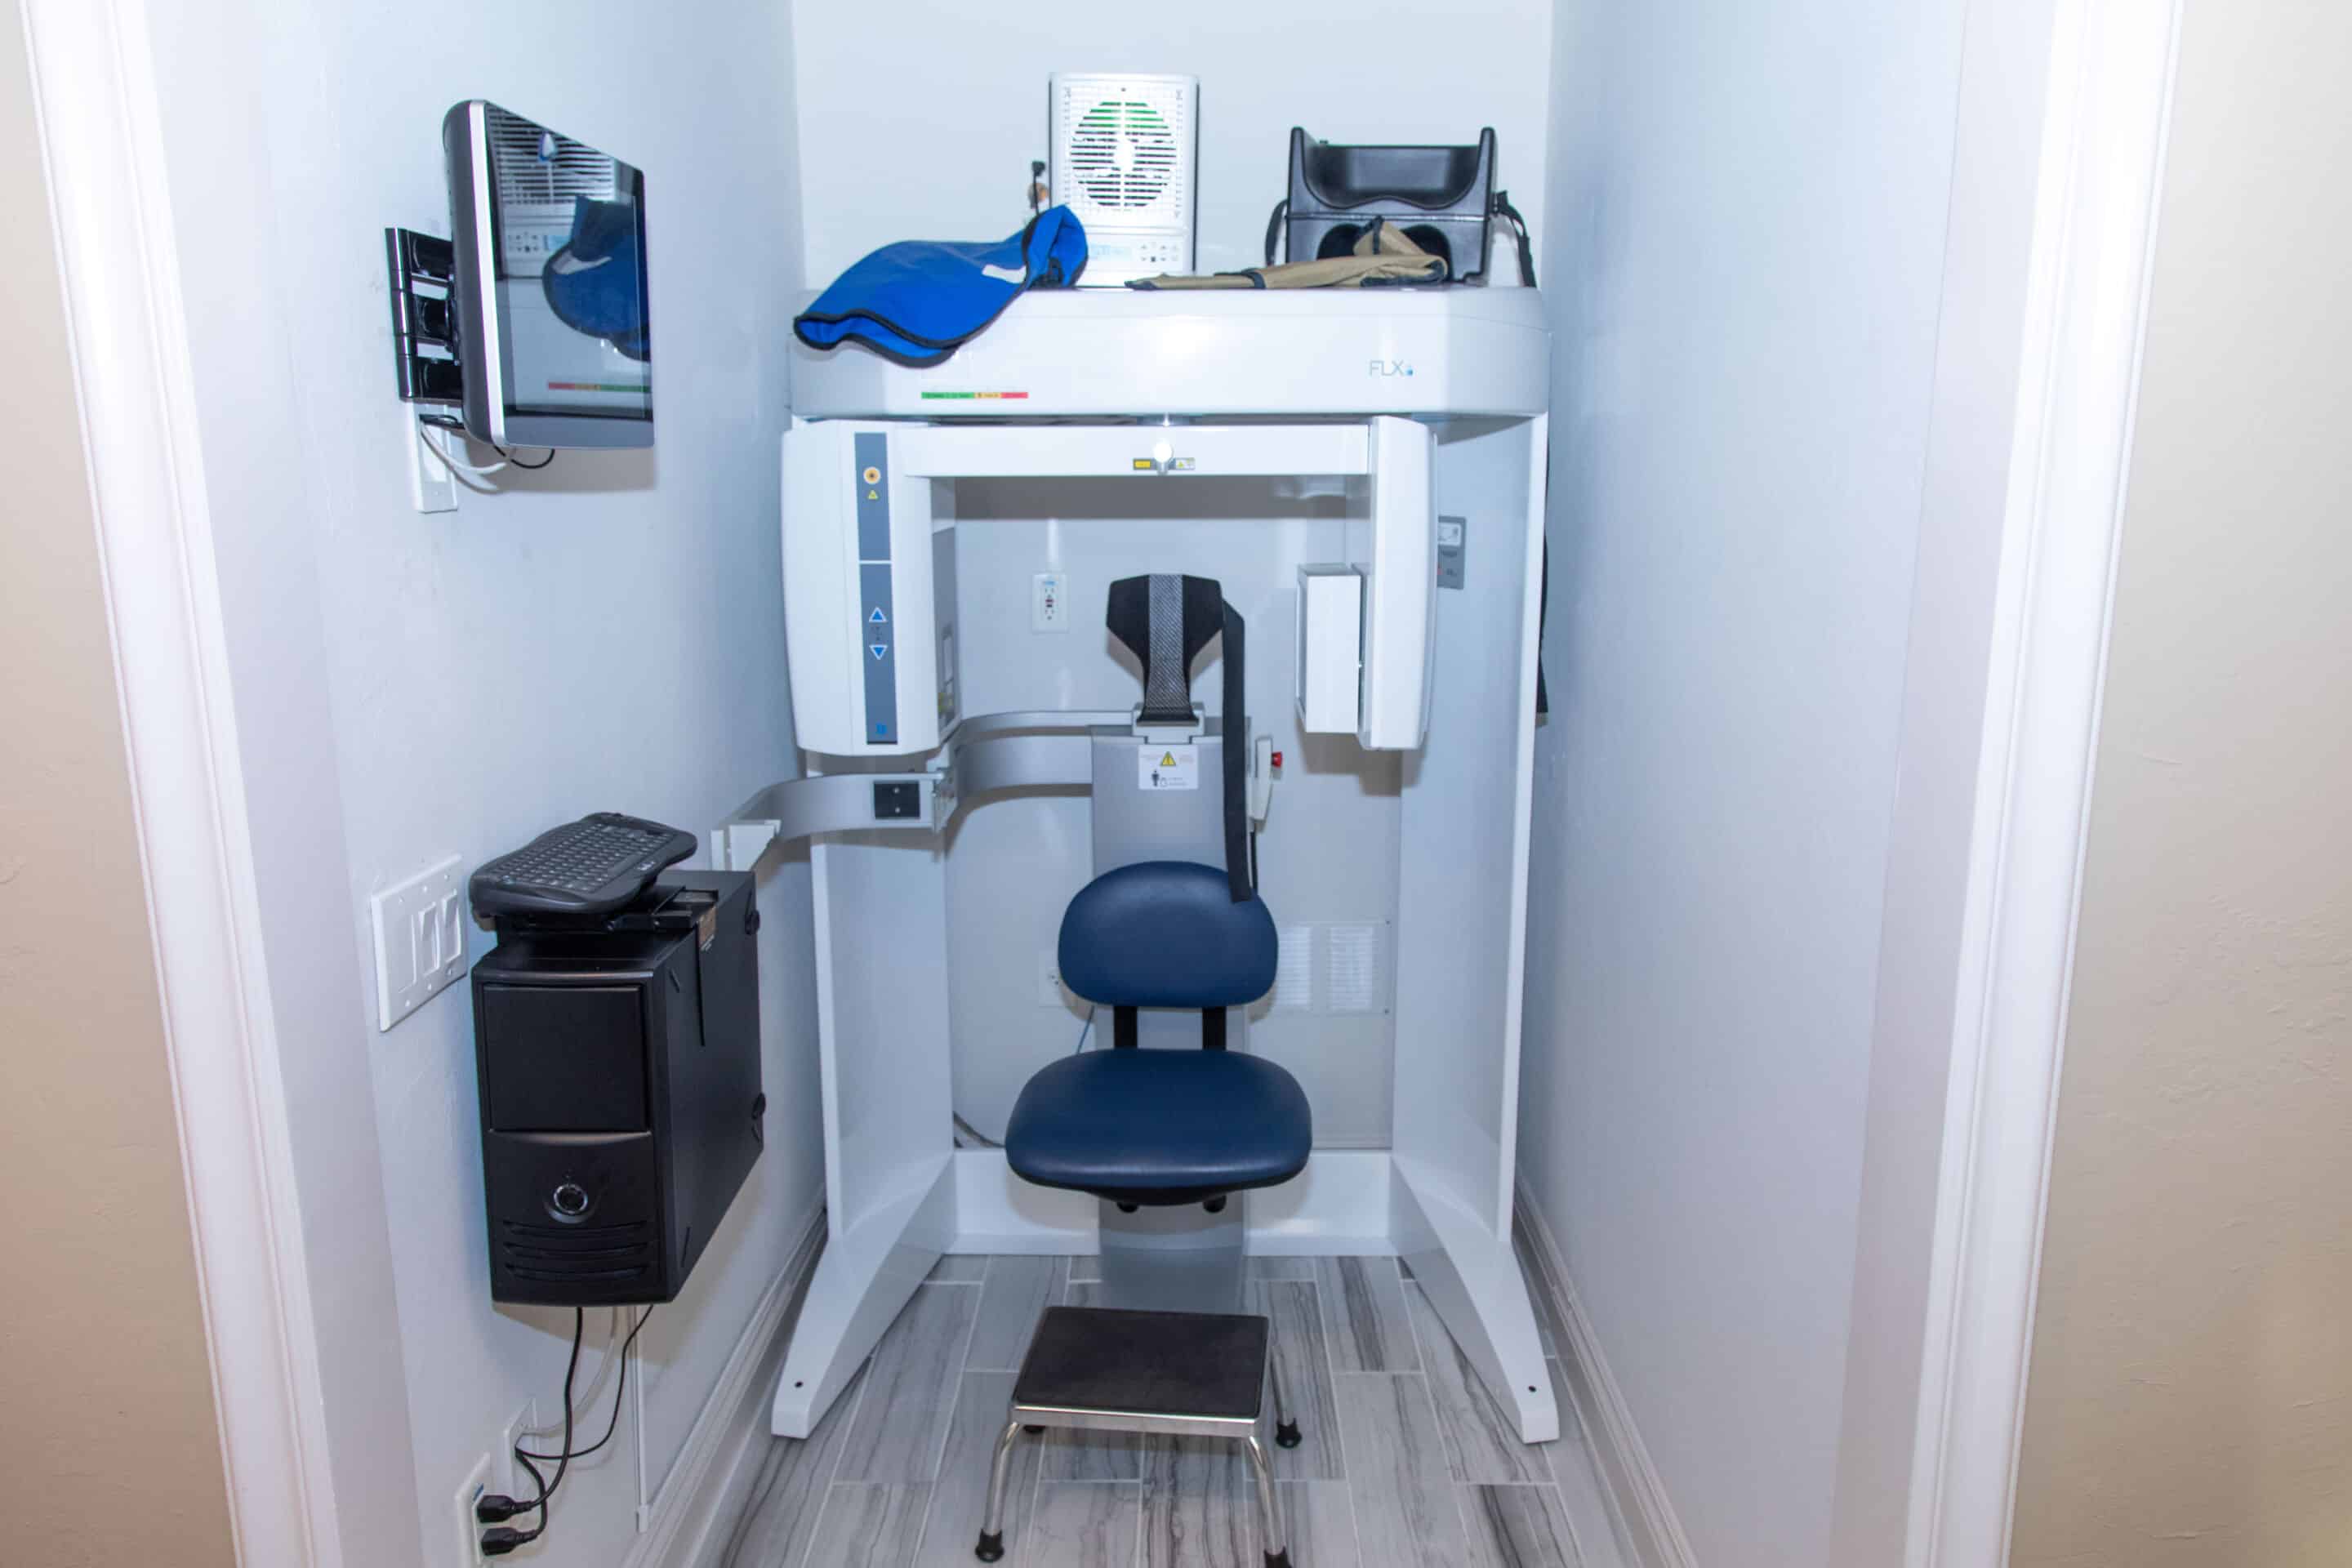 An X-ray machine room.